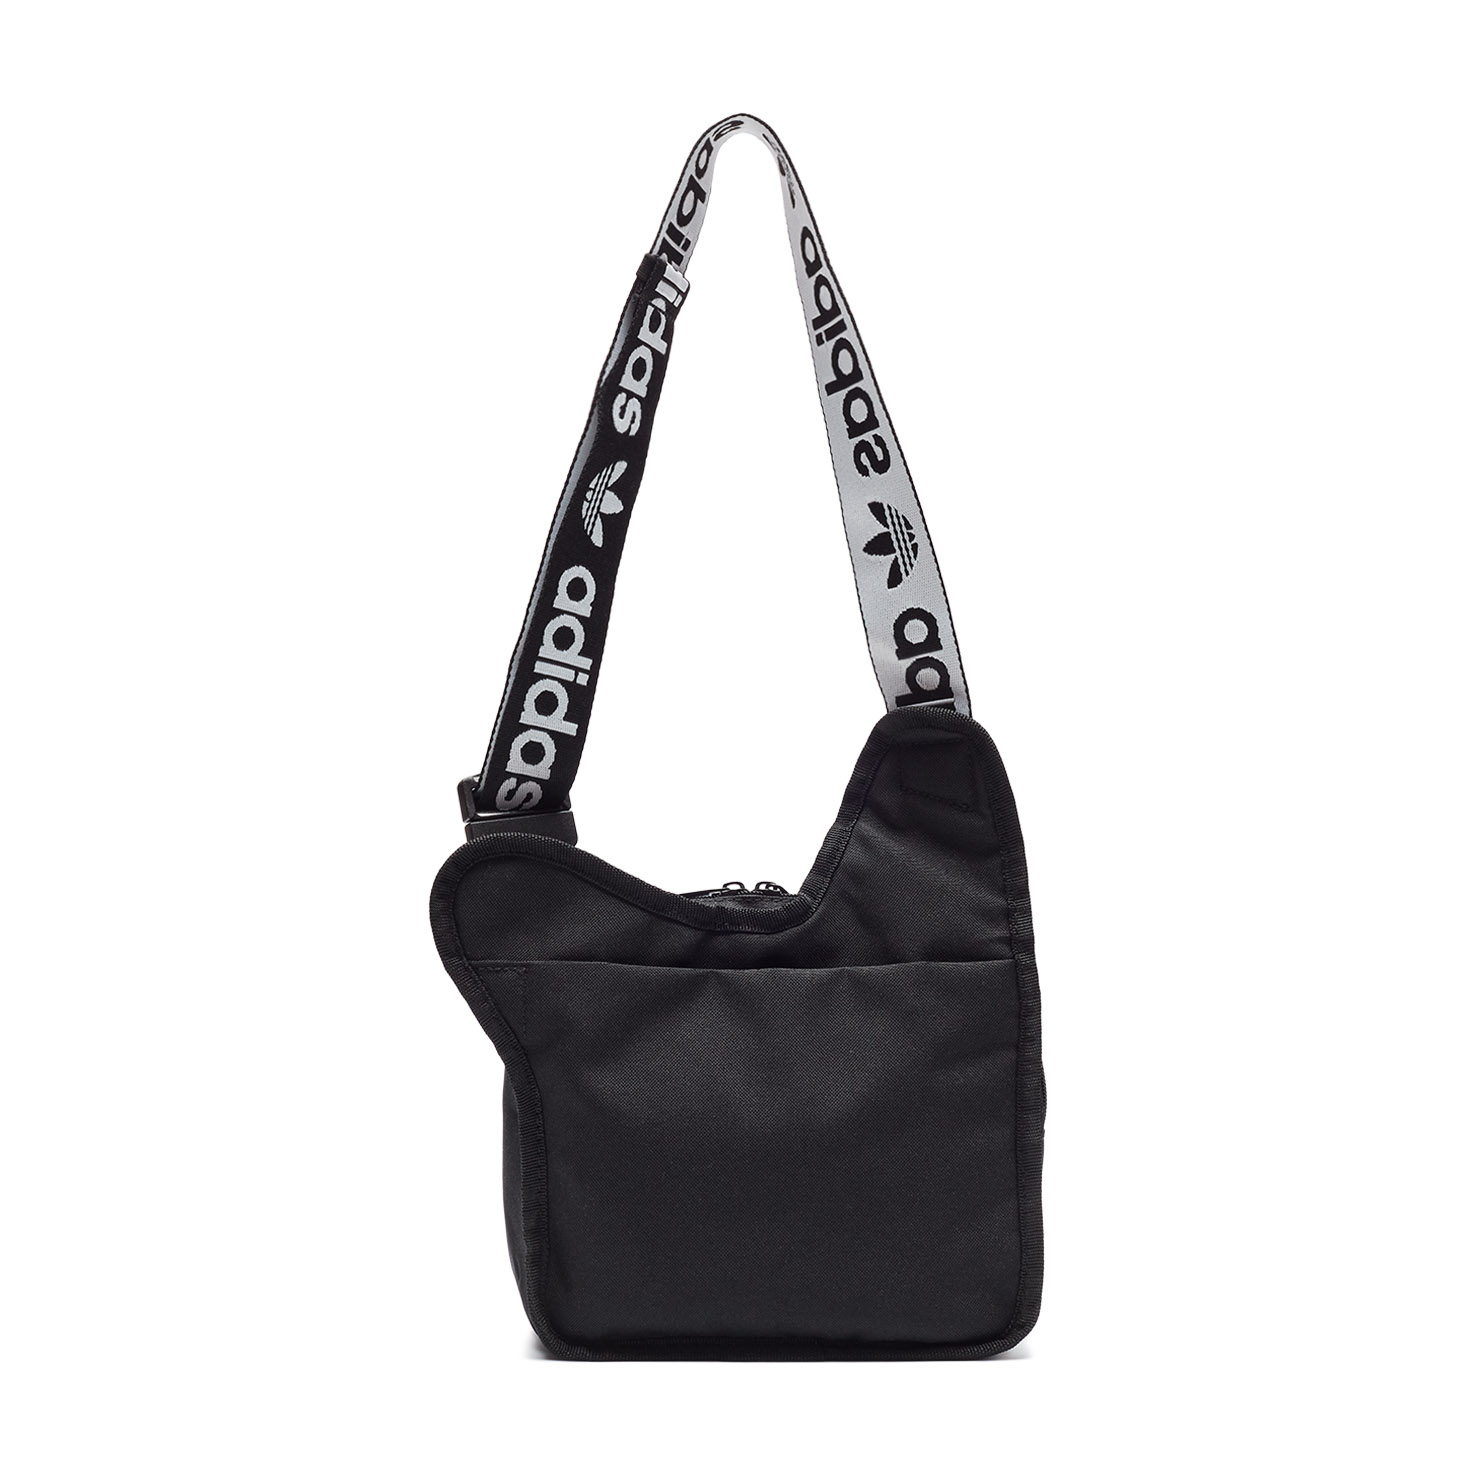 AC SLING BAG ADIDAS, размер Один размер, цвет черный ADNH45353 - фото 2